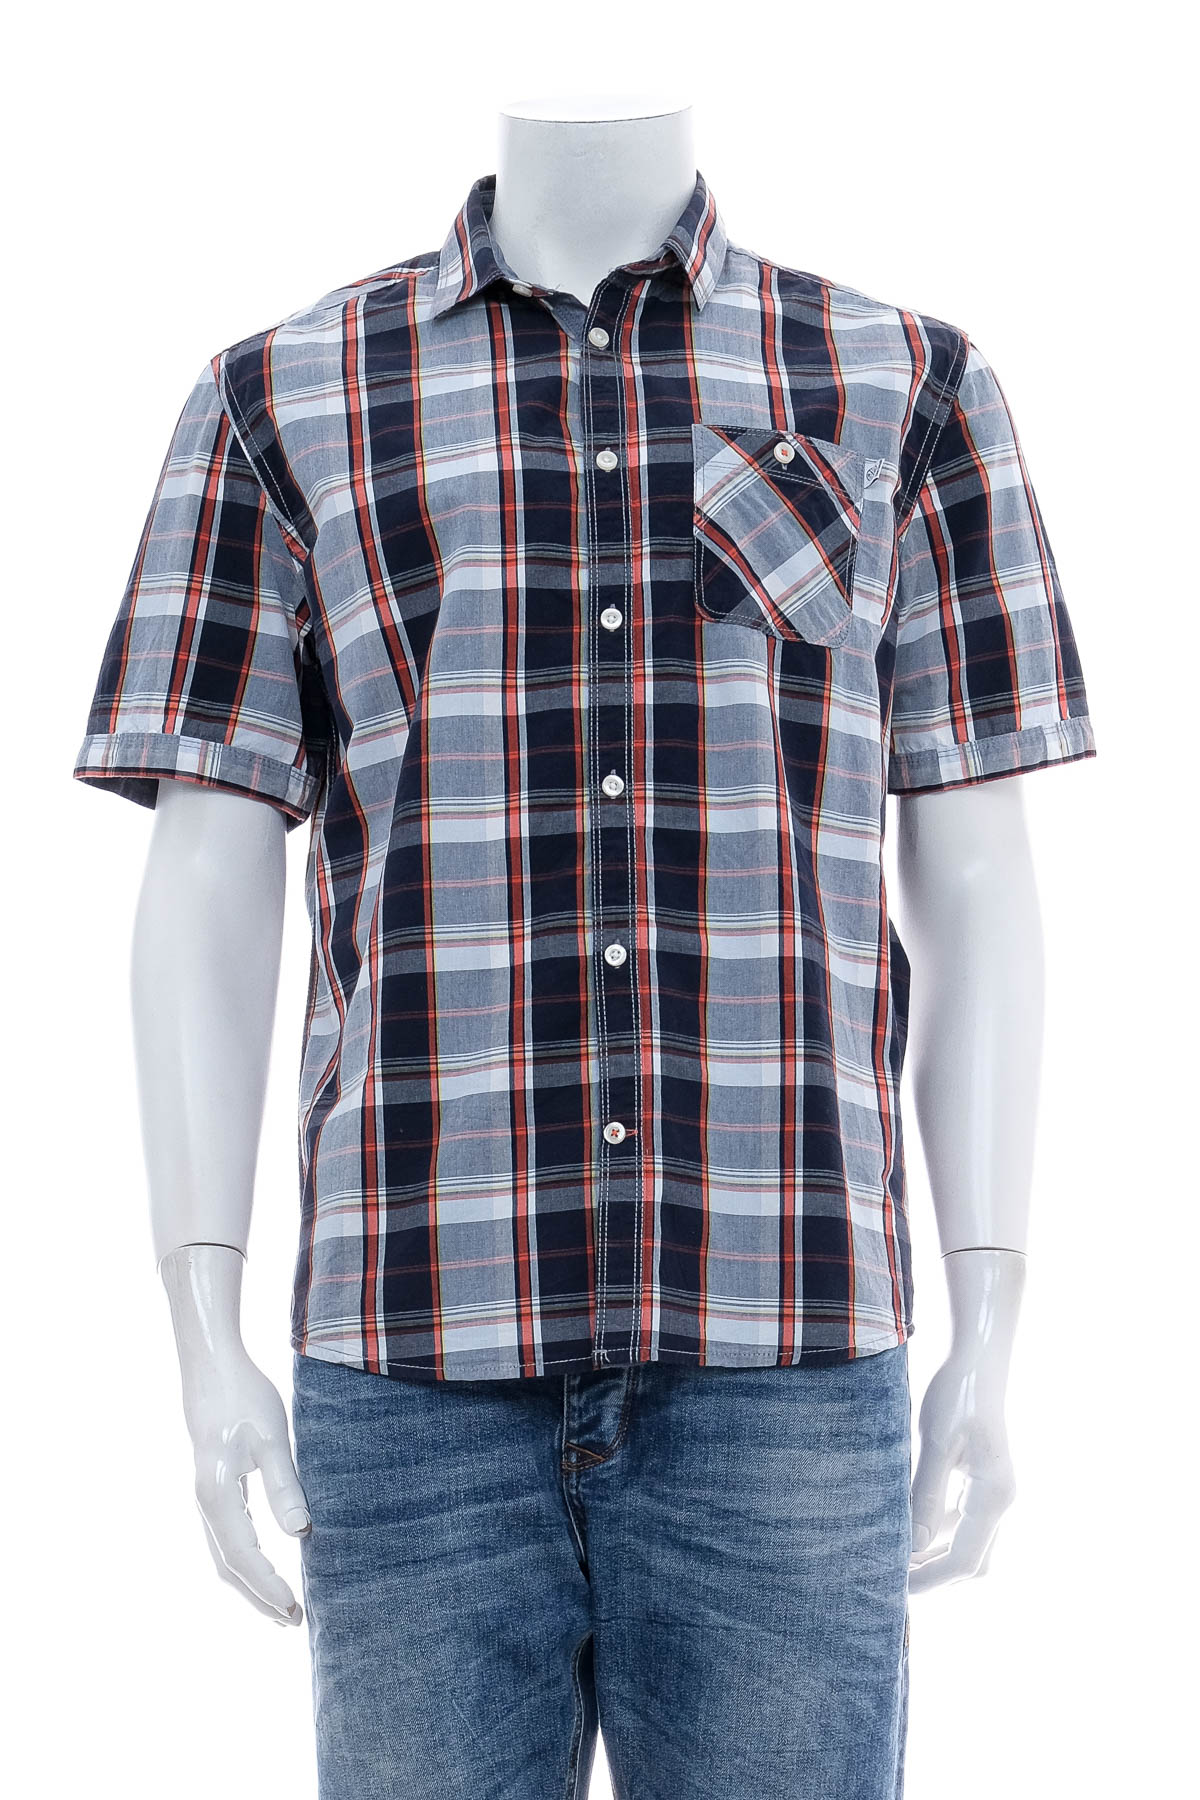 Men's shirt - TOM TAILOR - 0